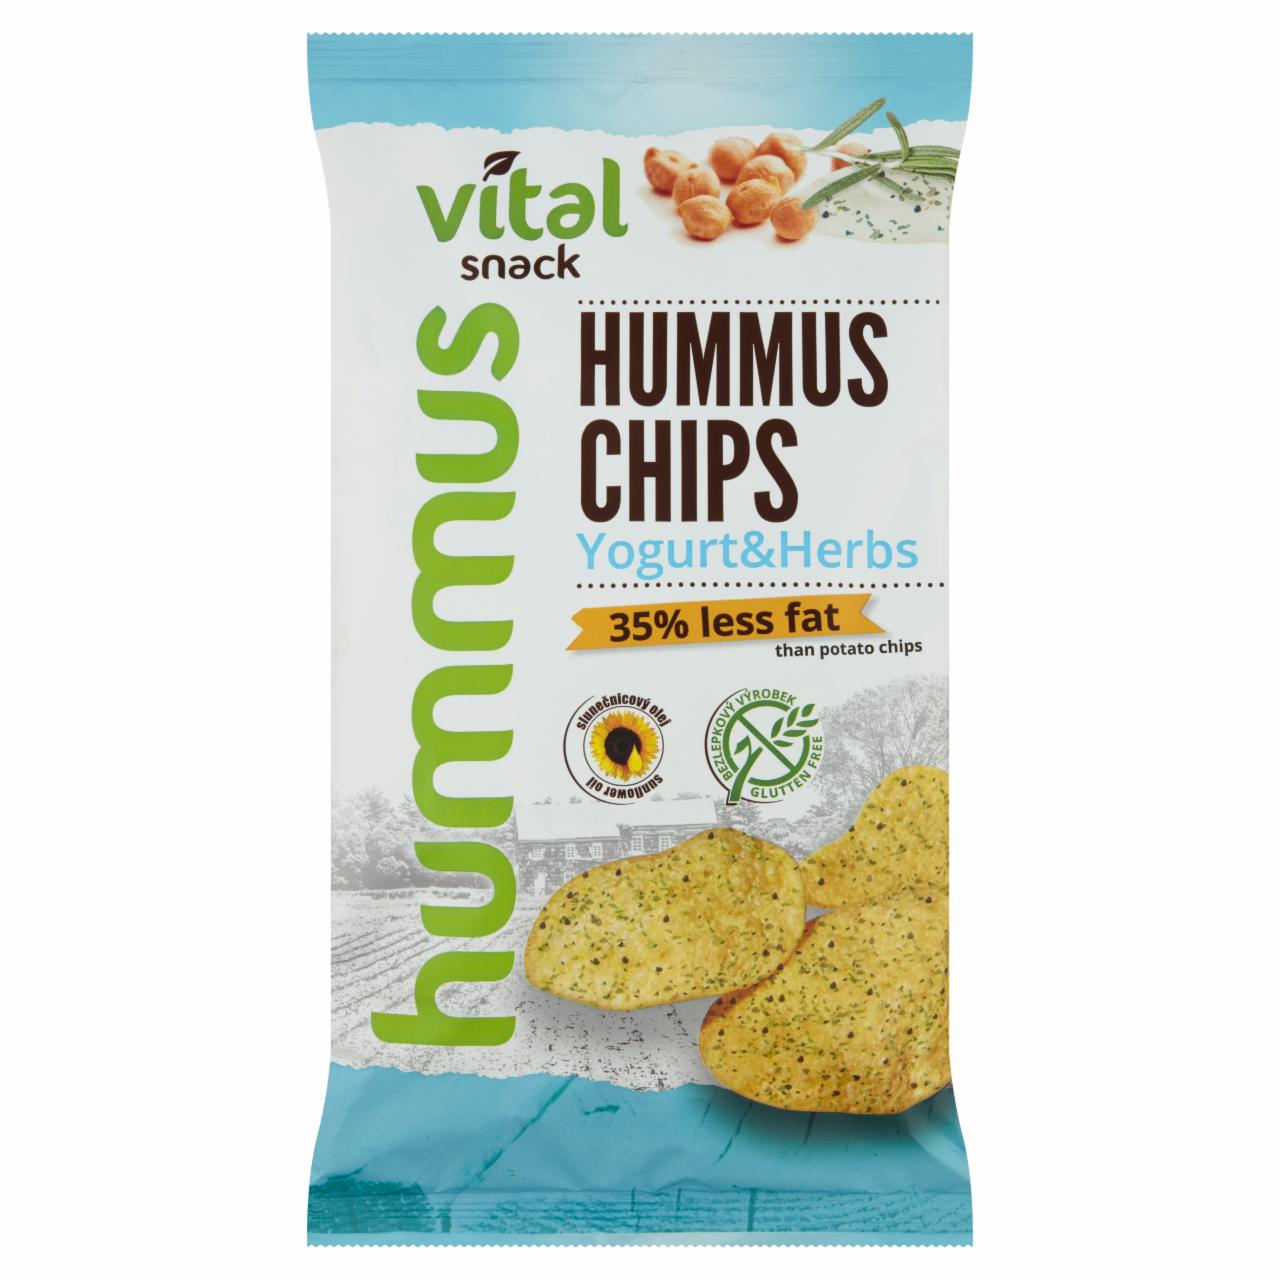 Képek - Vital Snack sült hummusz chips joghurtos-zöldfűszeres ízesítéssel 65 g